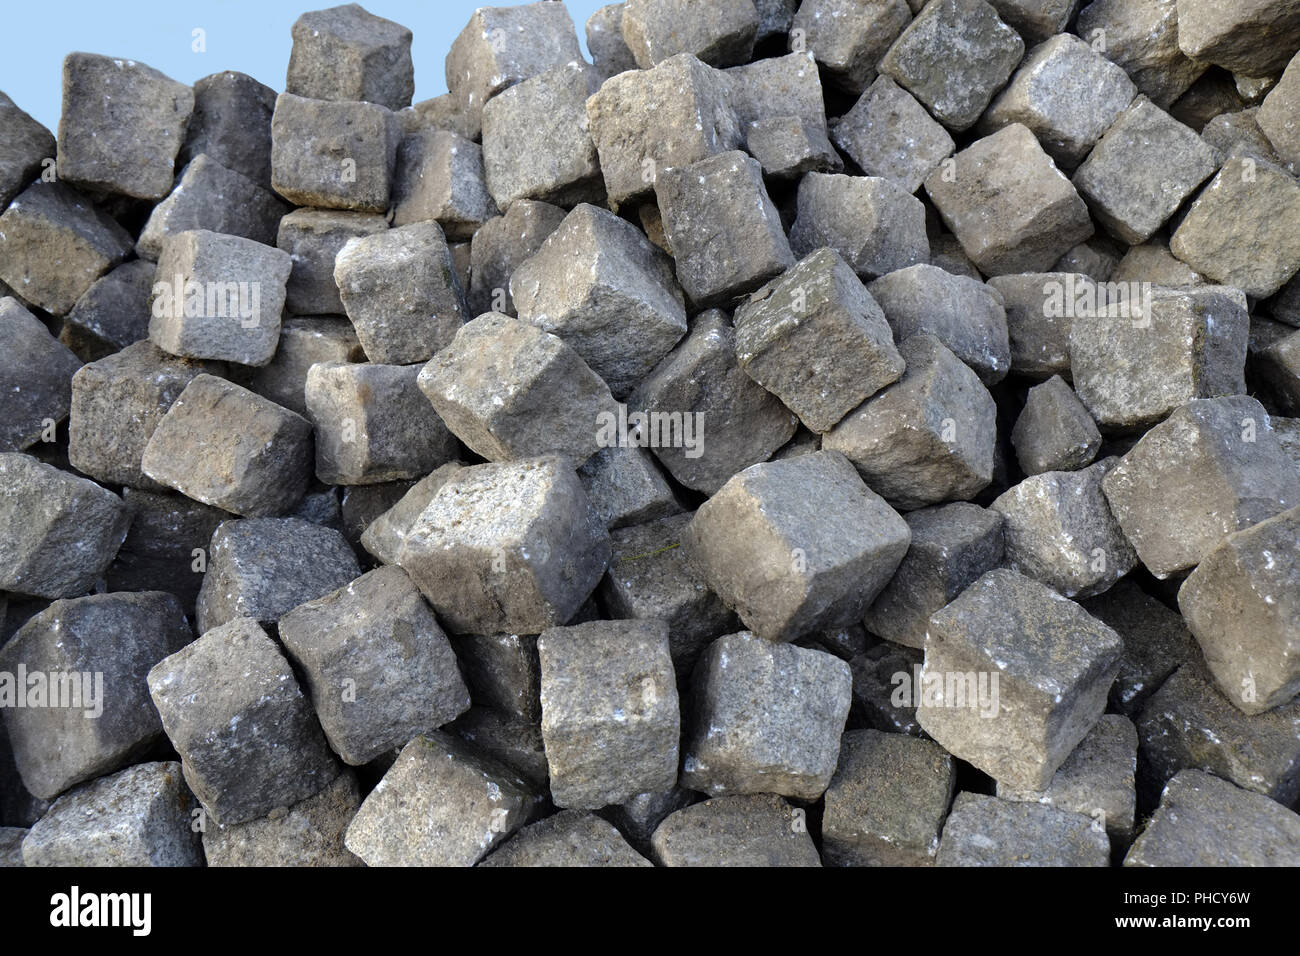 Paving stones, cobblestones Stock Photo